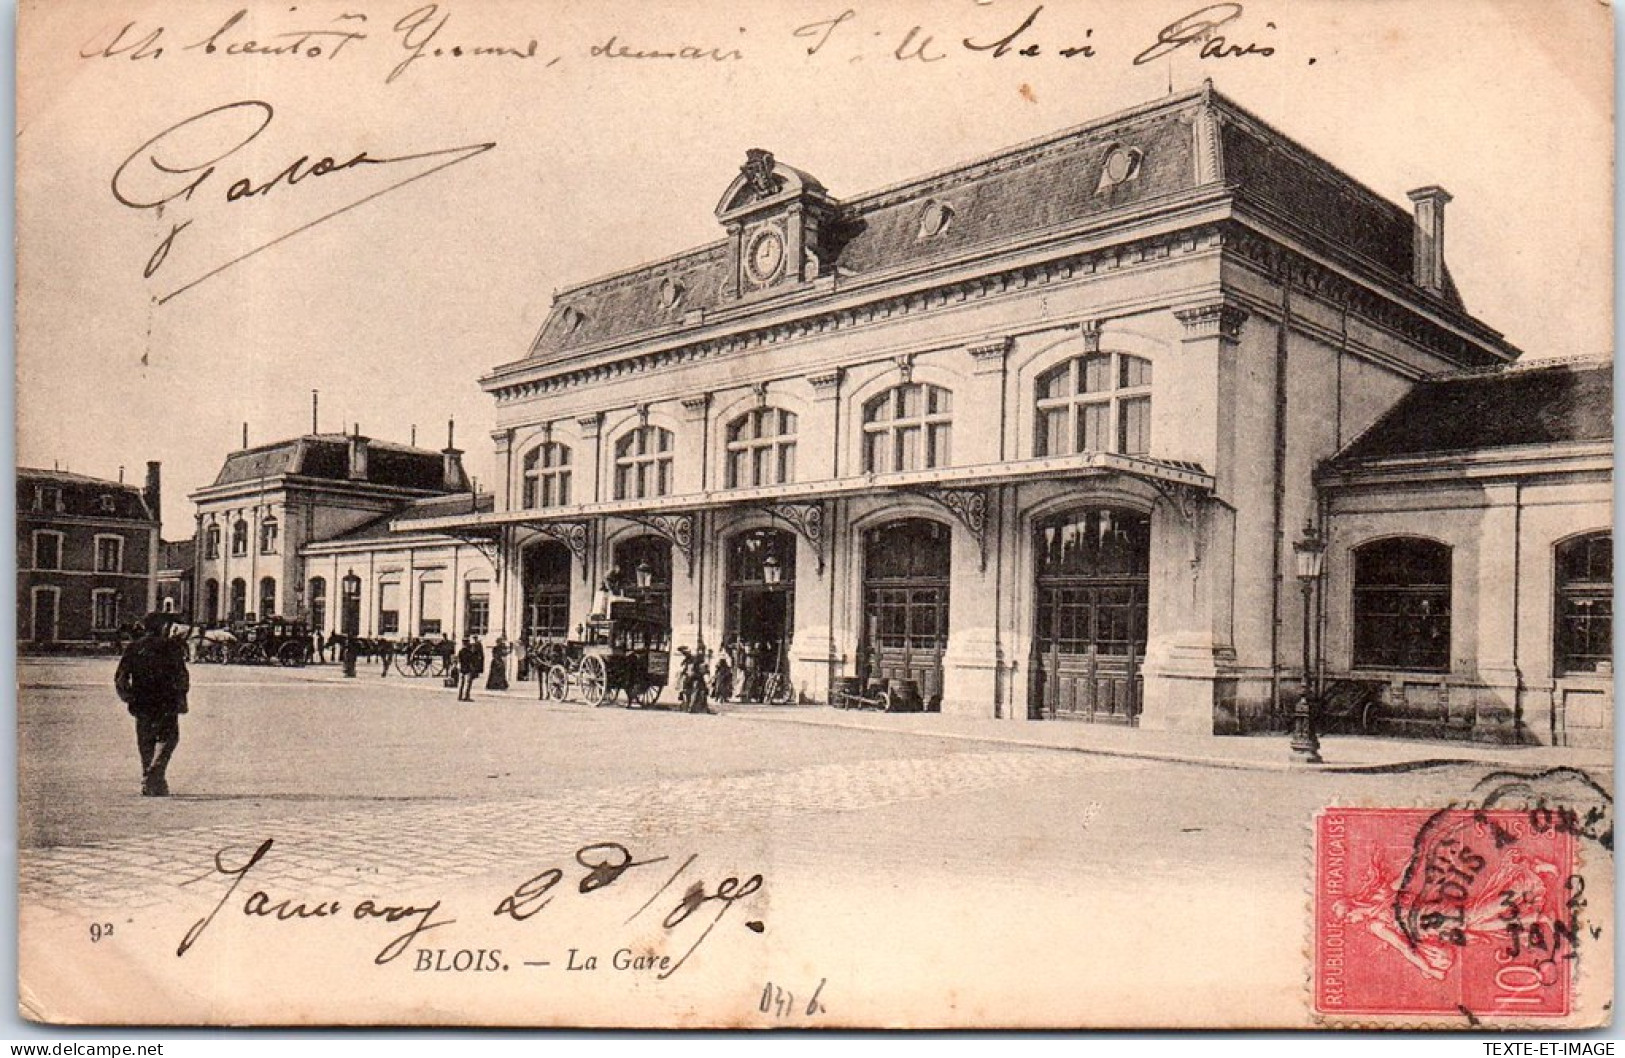 41 BLOIS - La Gare, Facade. - Blois